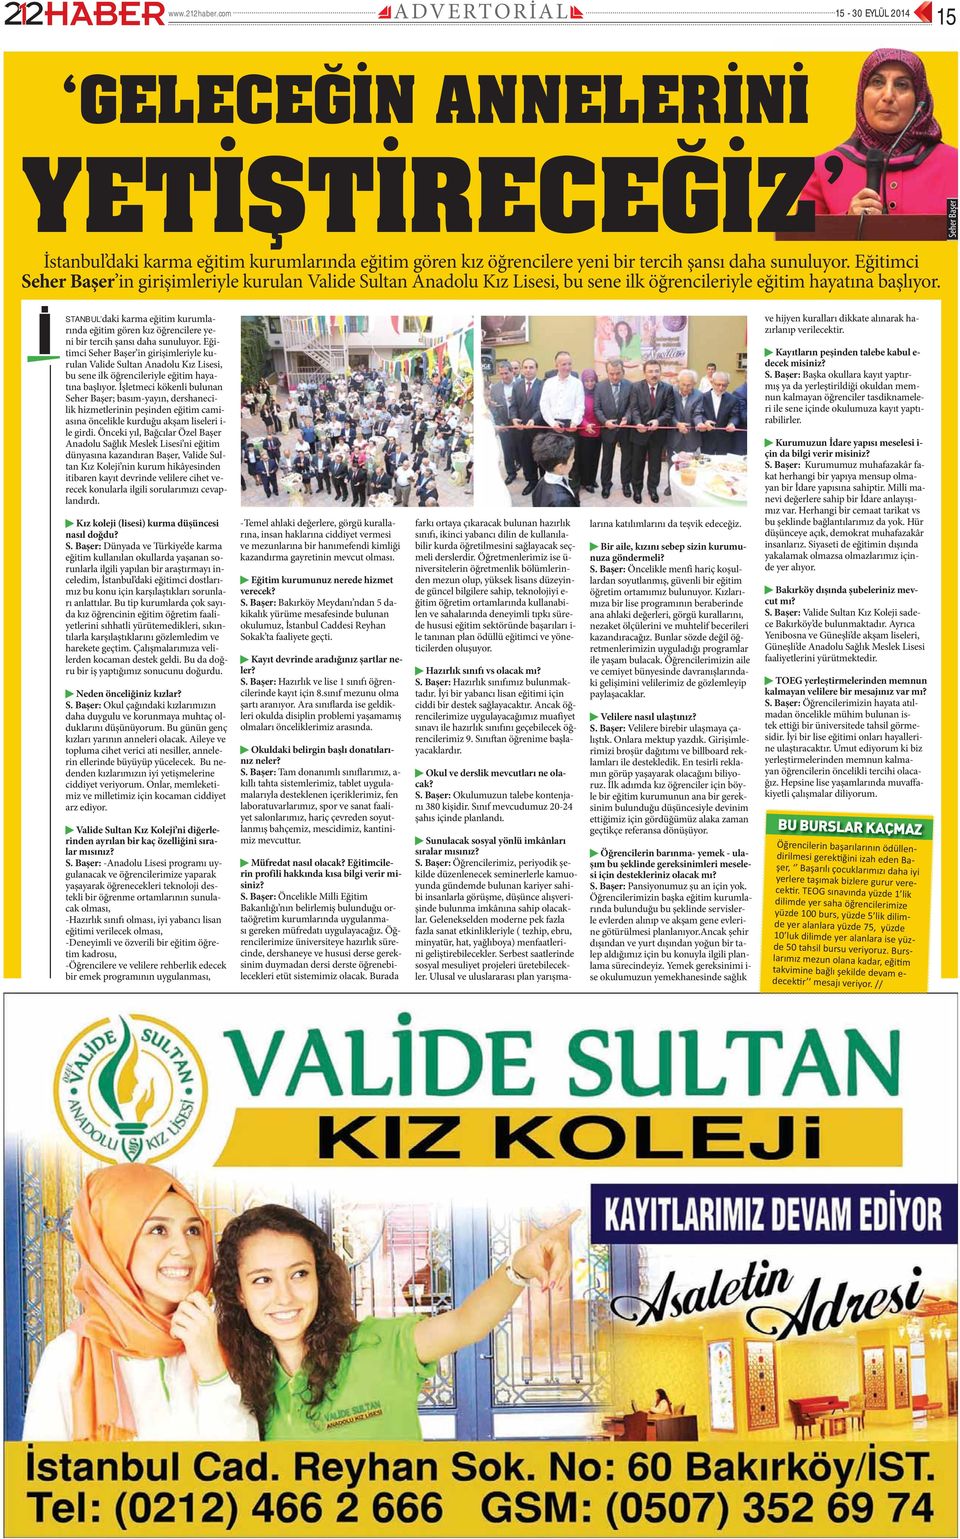 Eğitimci Seher Başer in girişimleriyle kurulan Valide Sultan Anadolu Kız Lisesi, bu sene ilk öğrencileriyle eğitim hayatına başlıyor.